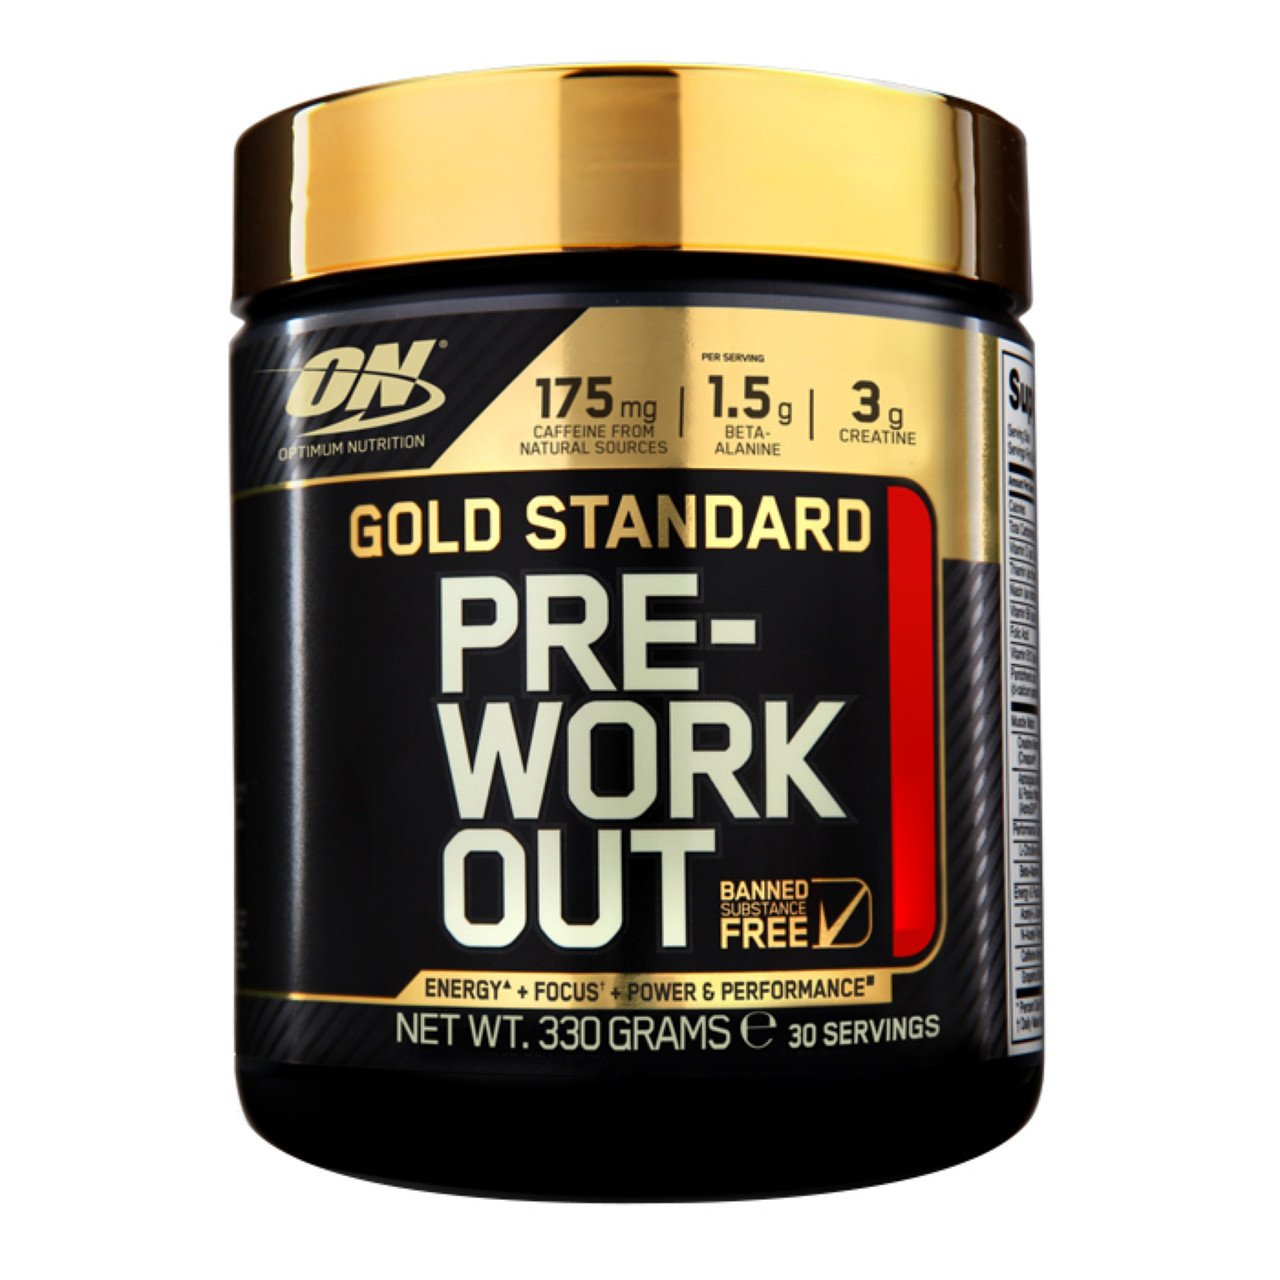 Предтренировочный комплекс Optimum Gold Standard Pre Workout, 330 грамм Ежевика лимон,  мл, Optimum Nutrition. Предтренировочный комплекс. Энергия и выносливость 